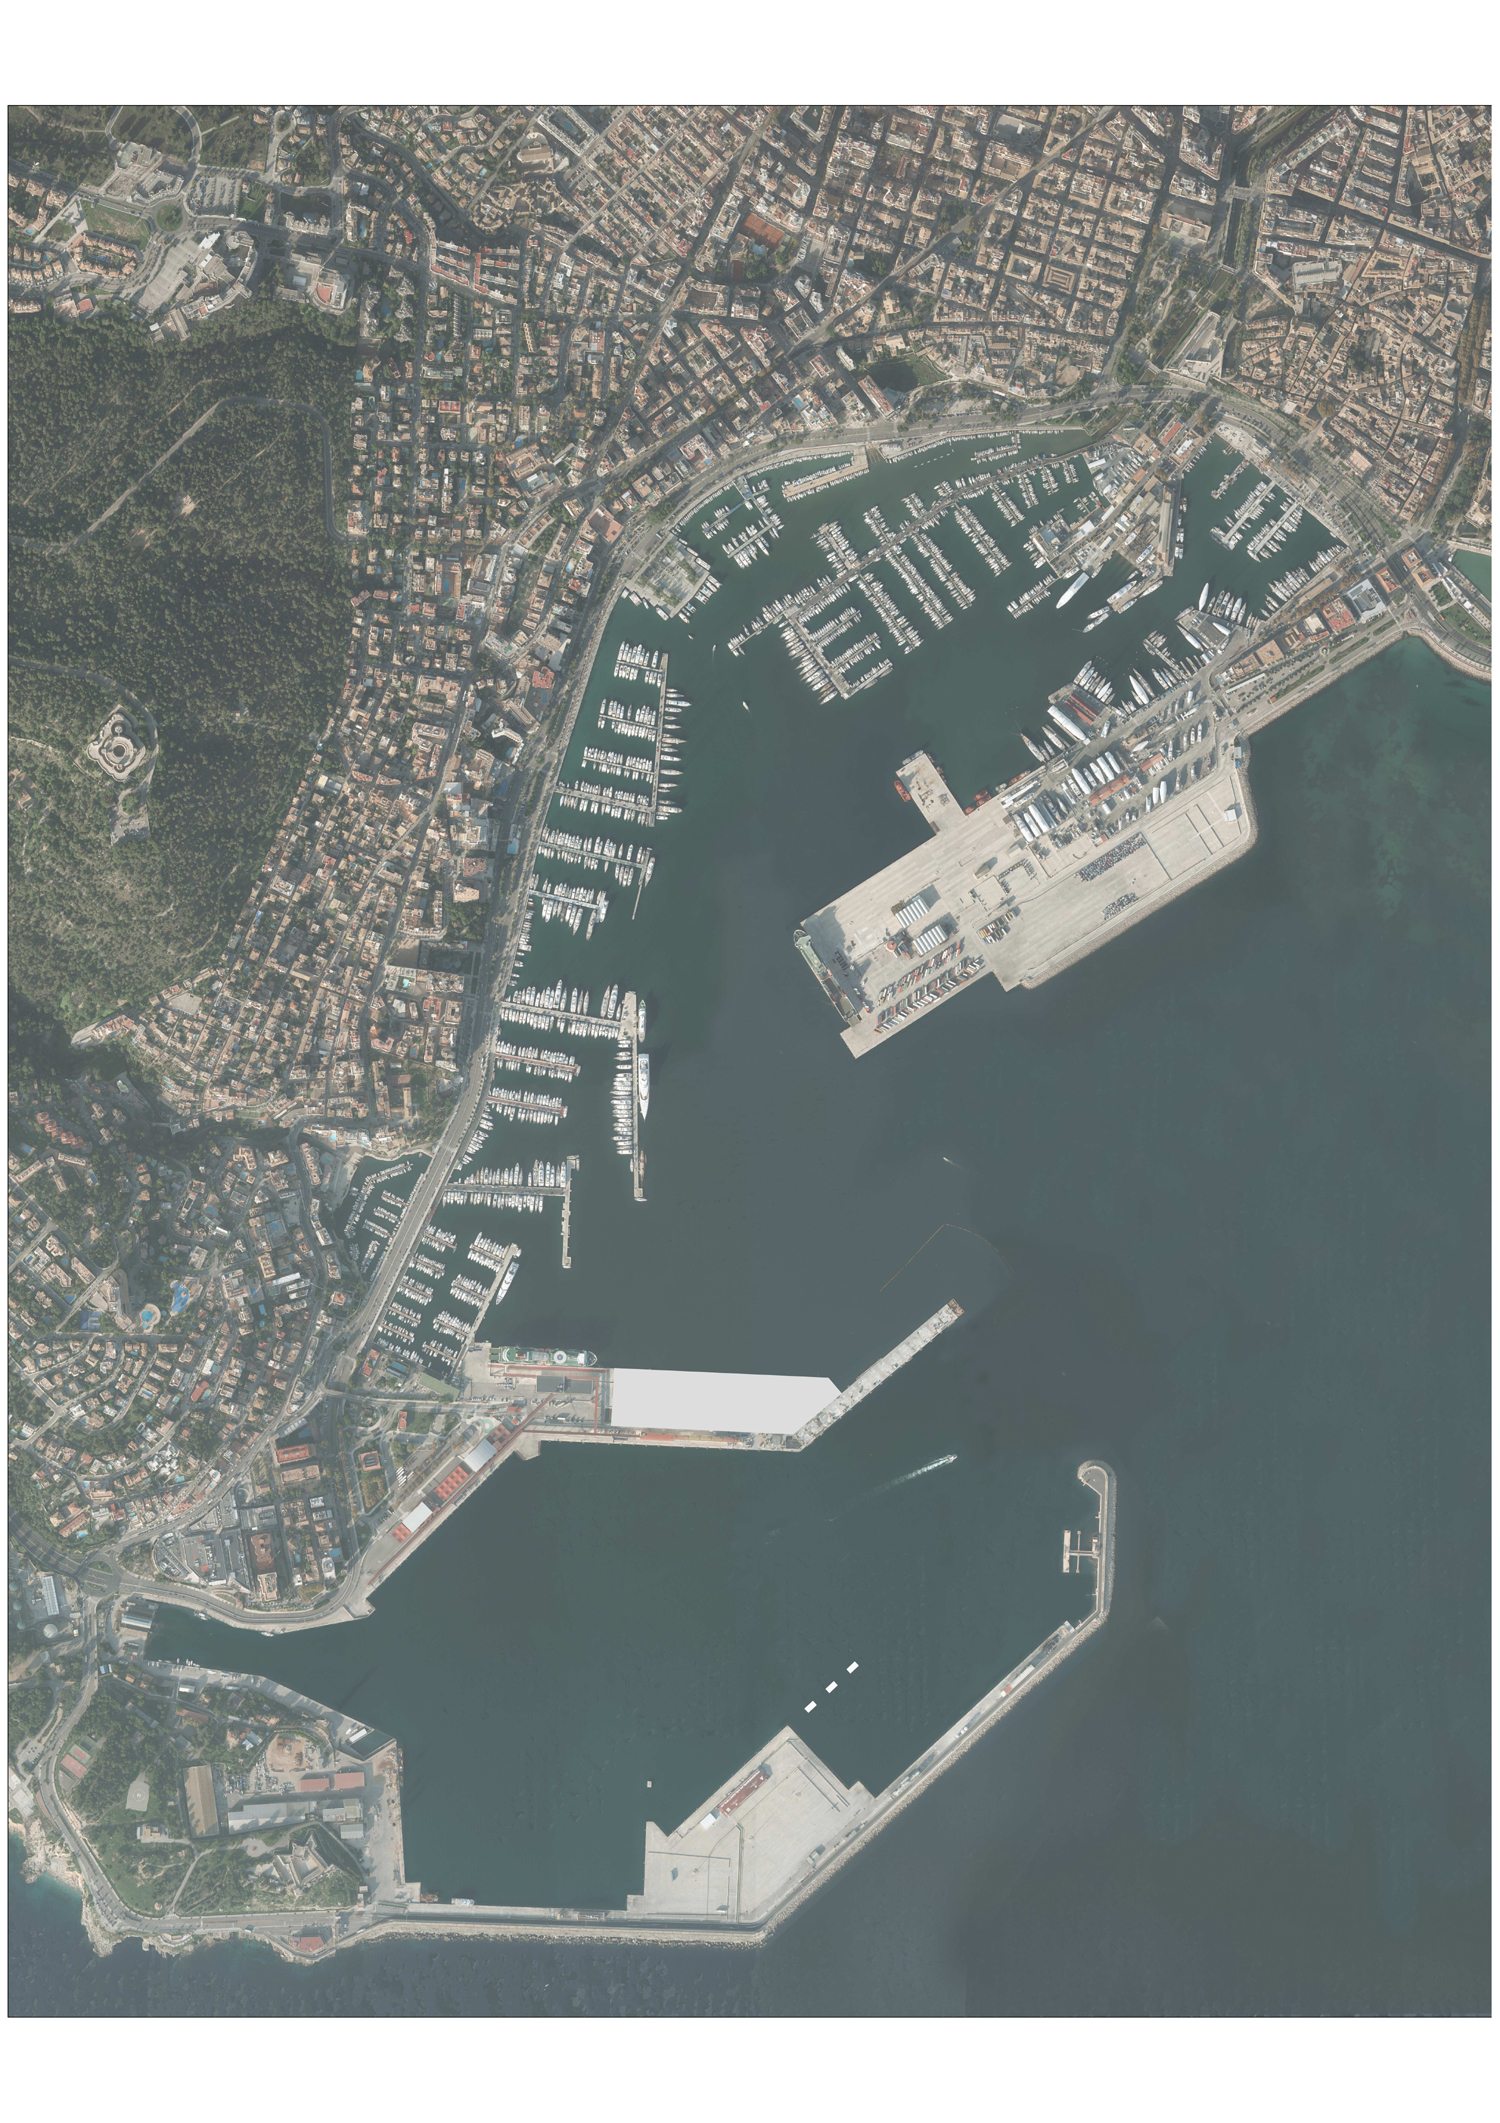 Öffentliche Ausschreibung für die Erweiterung des nördlichen West-Kais im Hafen von Palma.